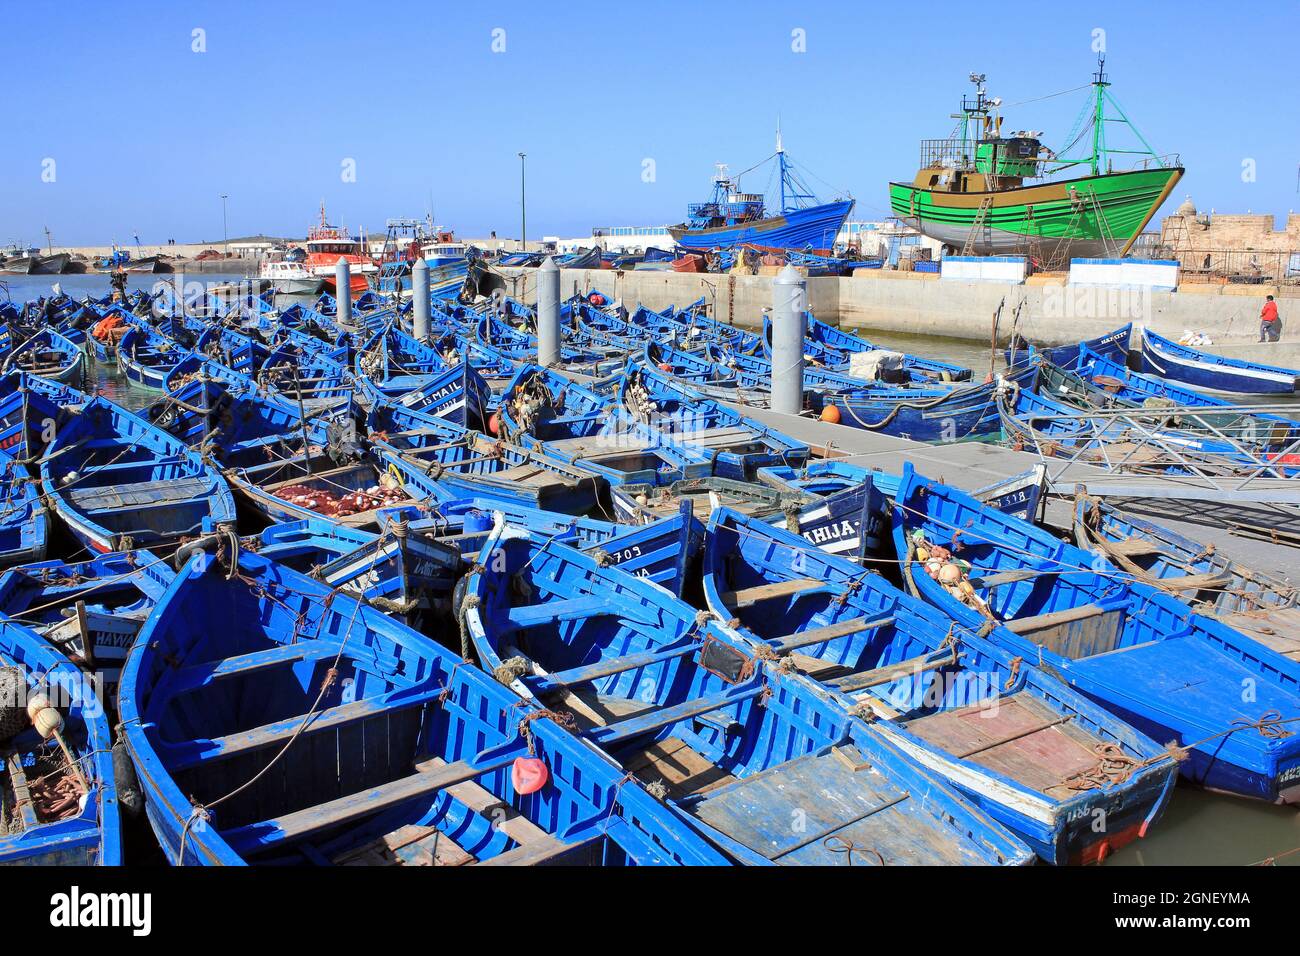 Bateaux de pêche dans le port d'Essaouira, Maroc Banque D'Images